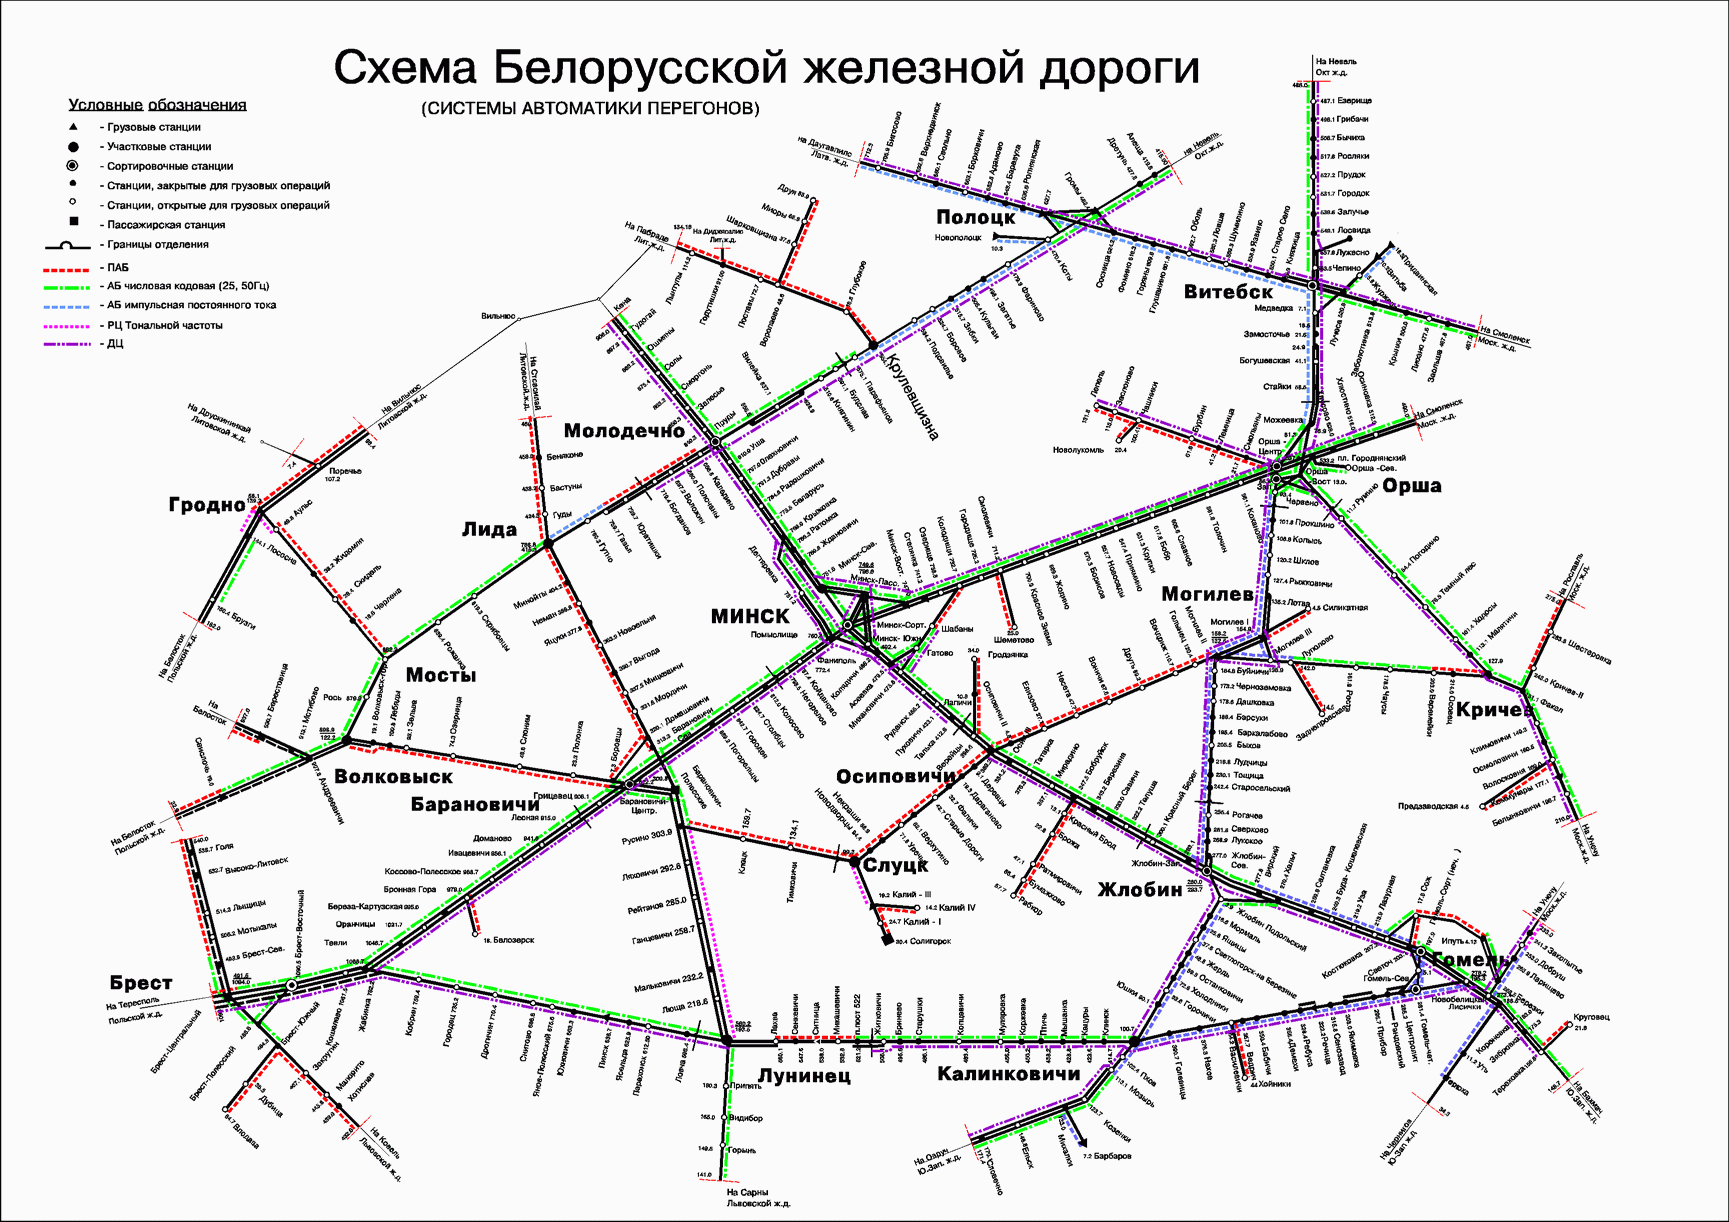 Горьковская железная дорога: схема движения, время отправки, бронирование